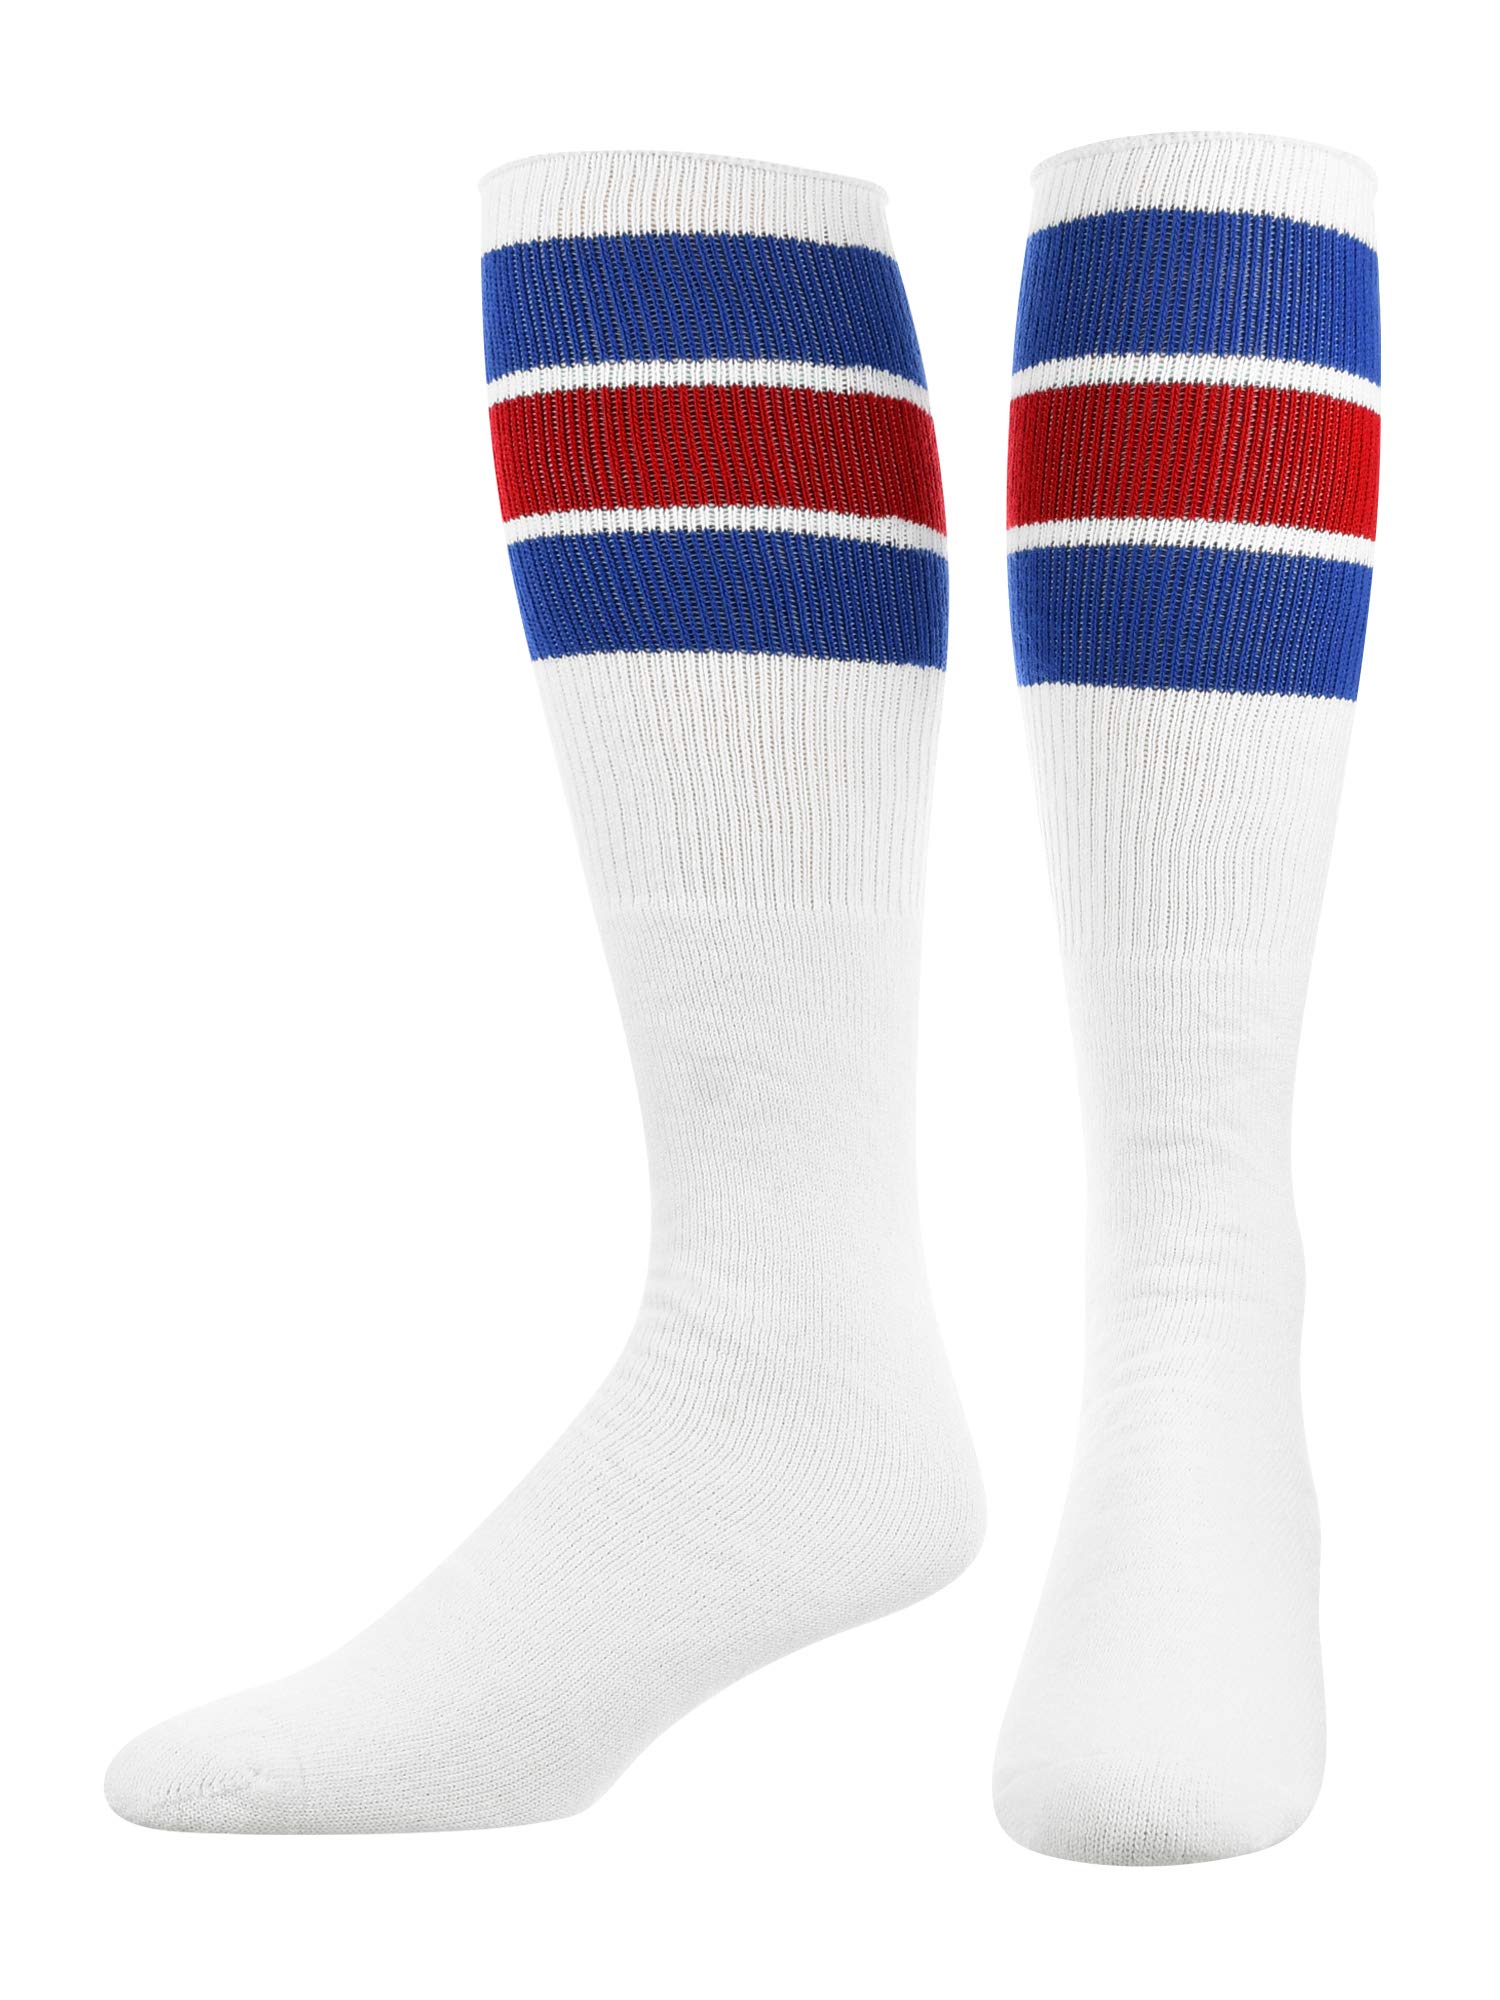 Retro Tube Socks with Stripes for Men & Women - 3 Stripe